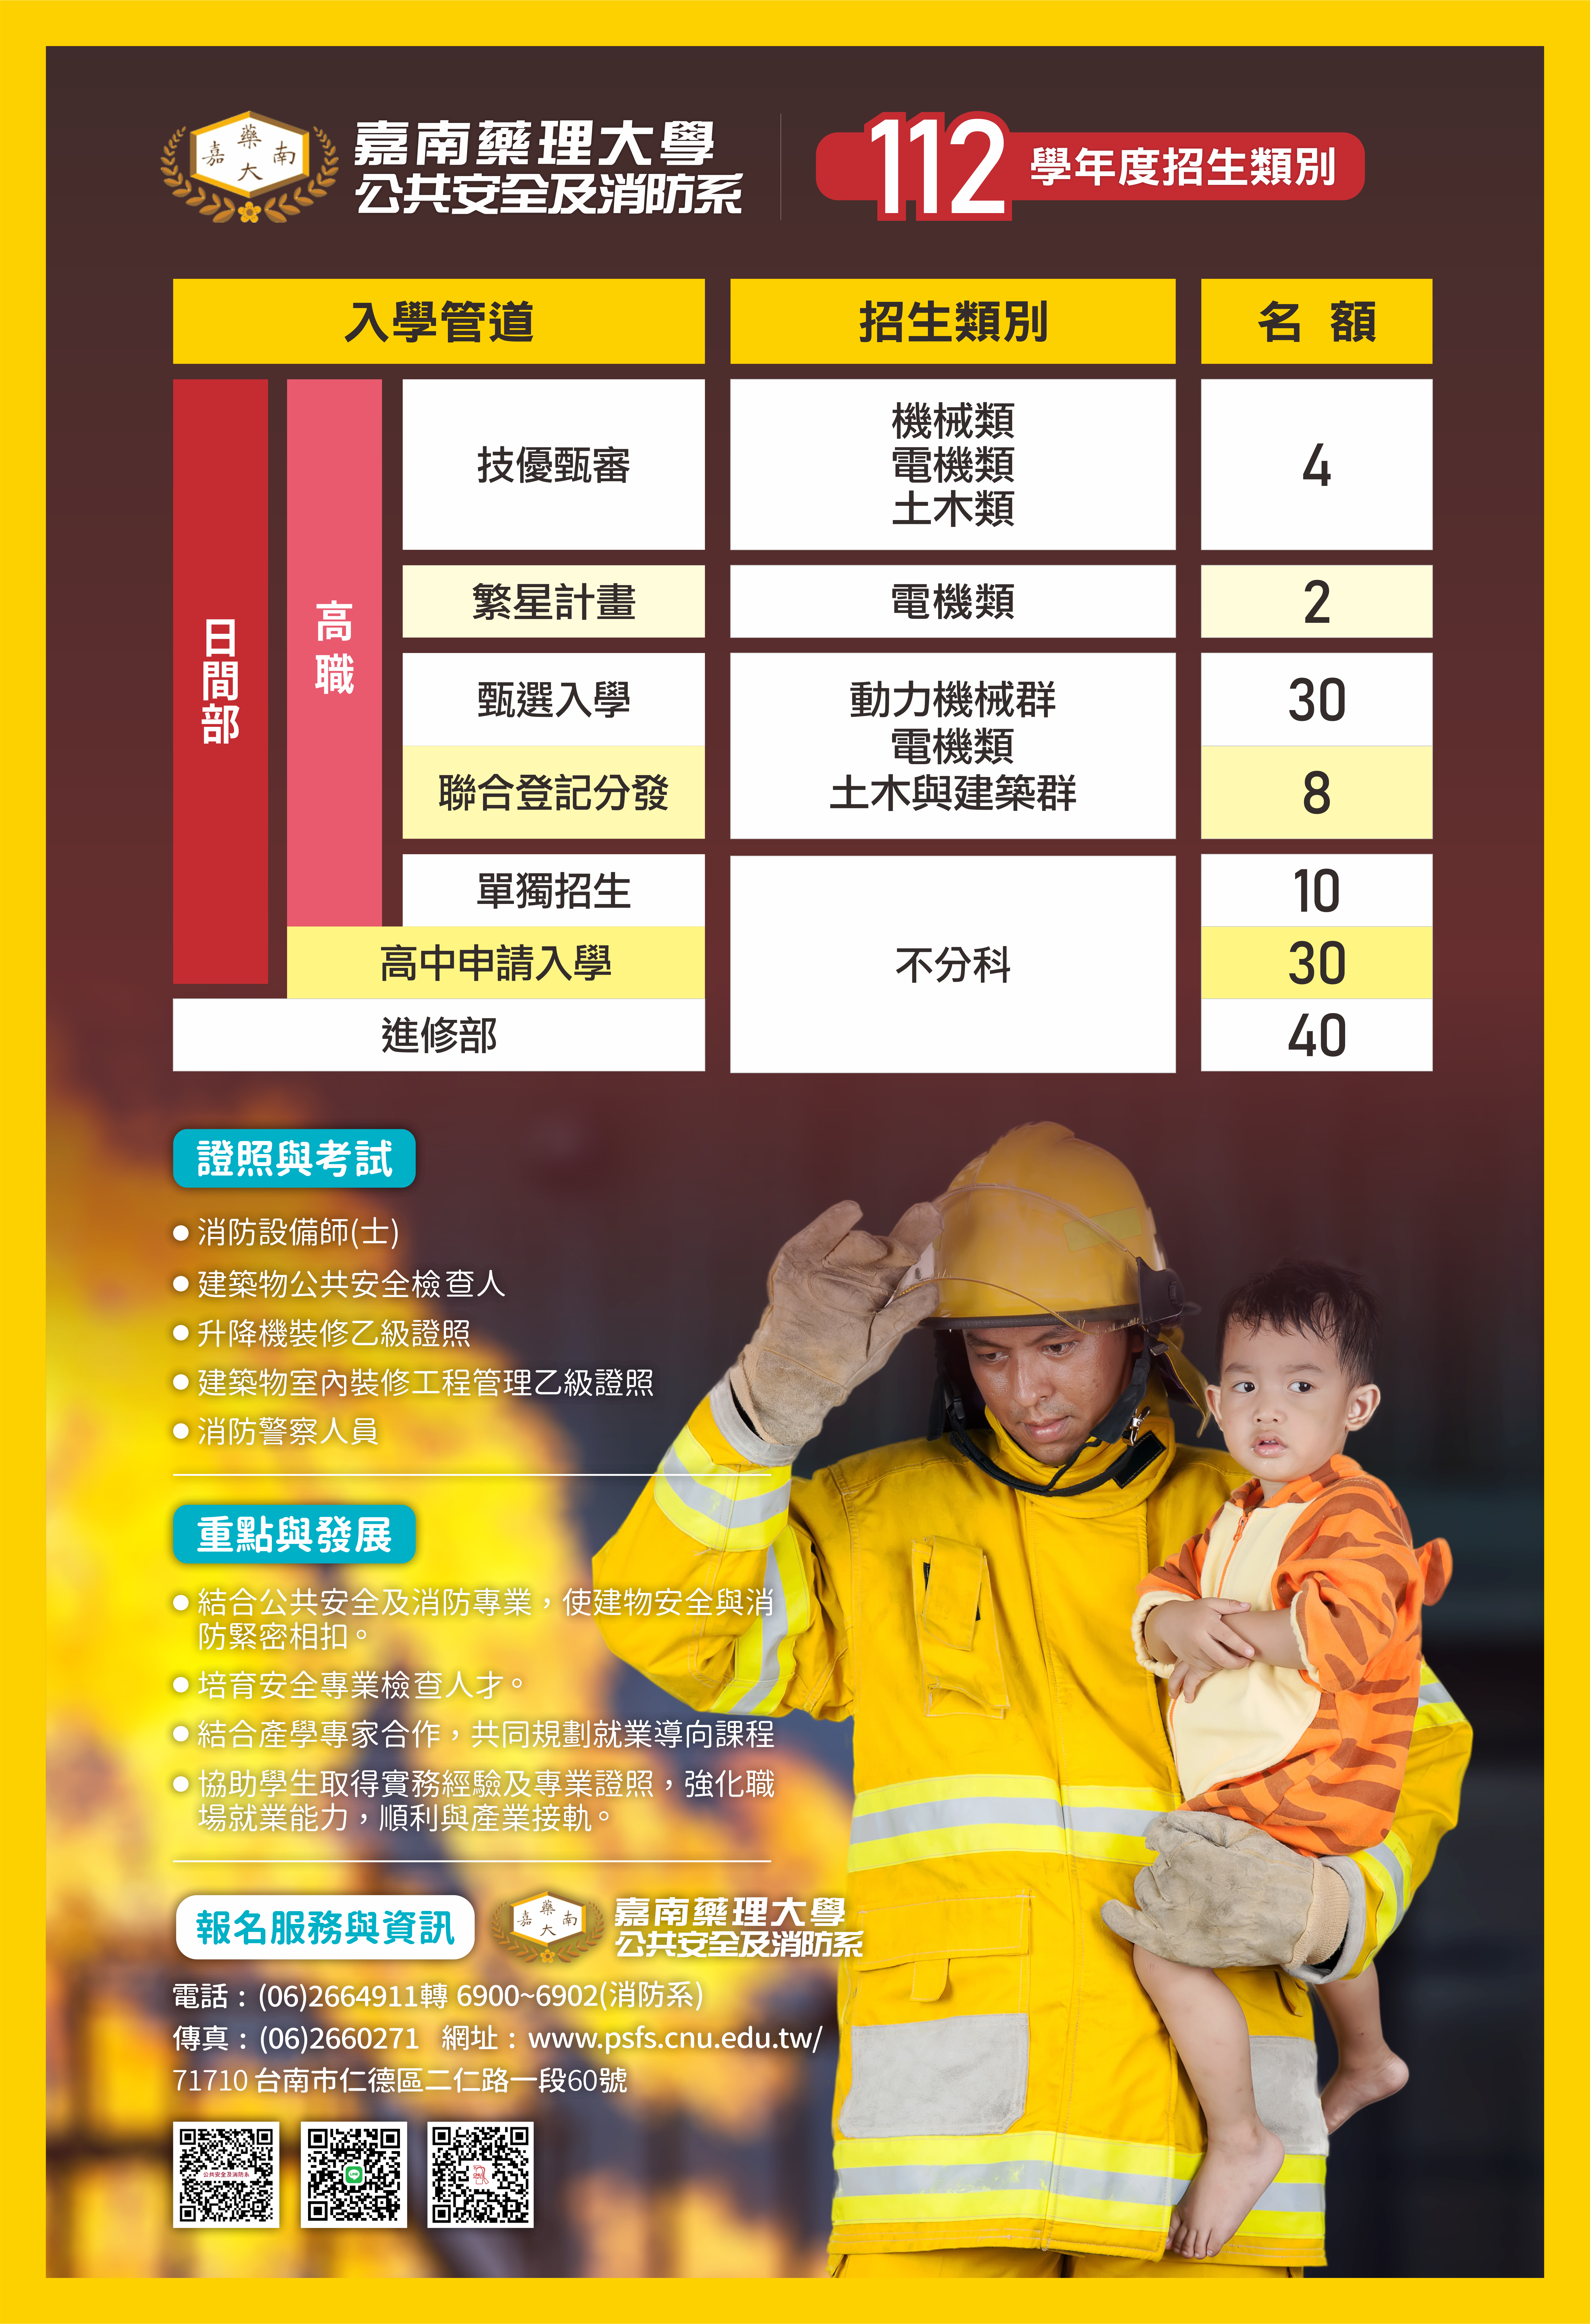 220913 嘉藥 - 公共安全及消防系 ( 112年度 - 2K 海報 )